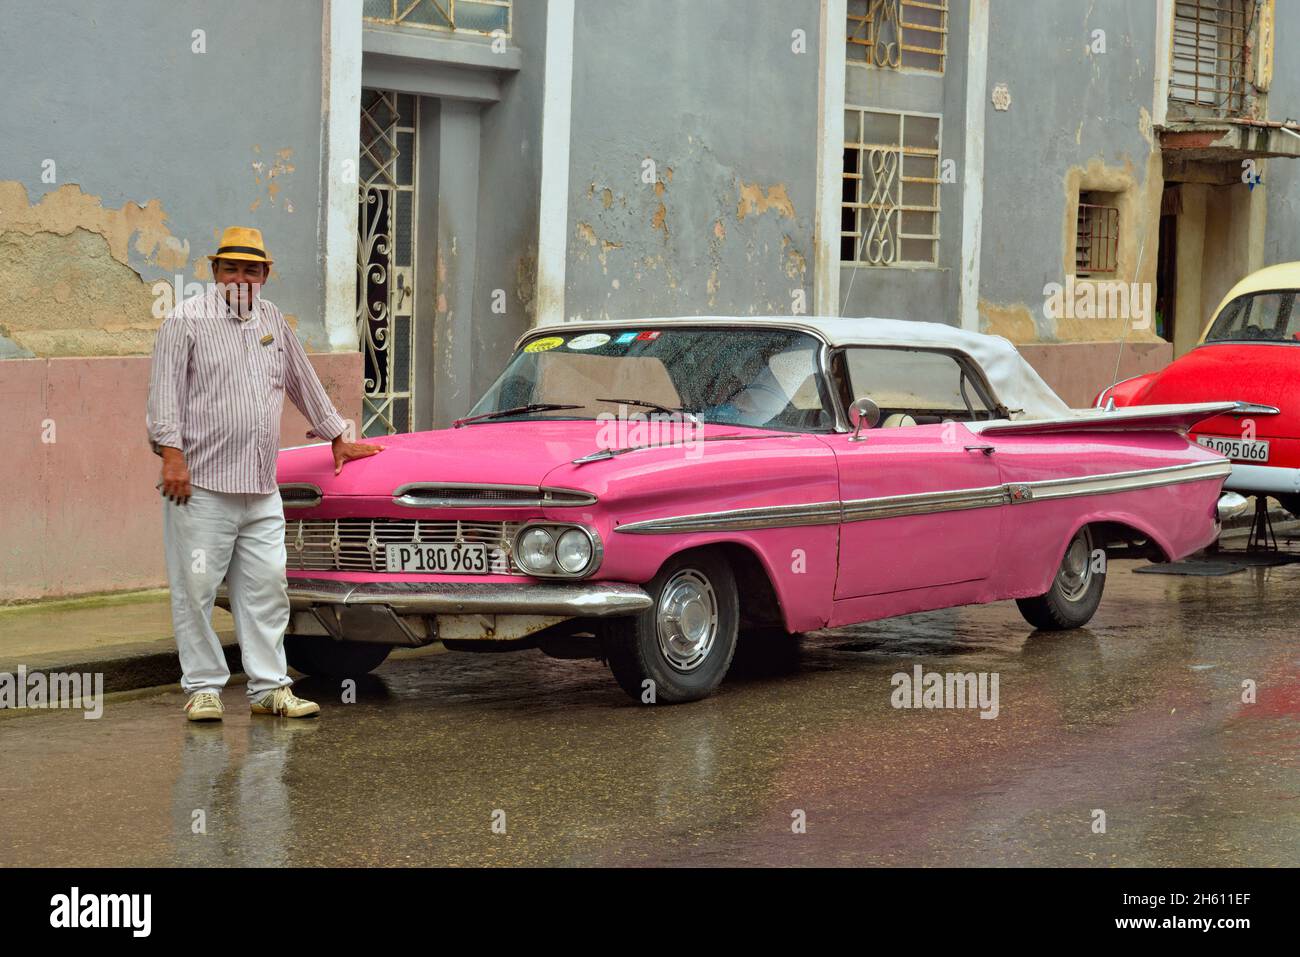 Scène de rue dans le centre de la Havane - Impala 1959 de Chevrolet avec le fier propriétaire, la Habana (la Havane), Habana, Cuba Banque D'Images